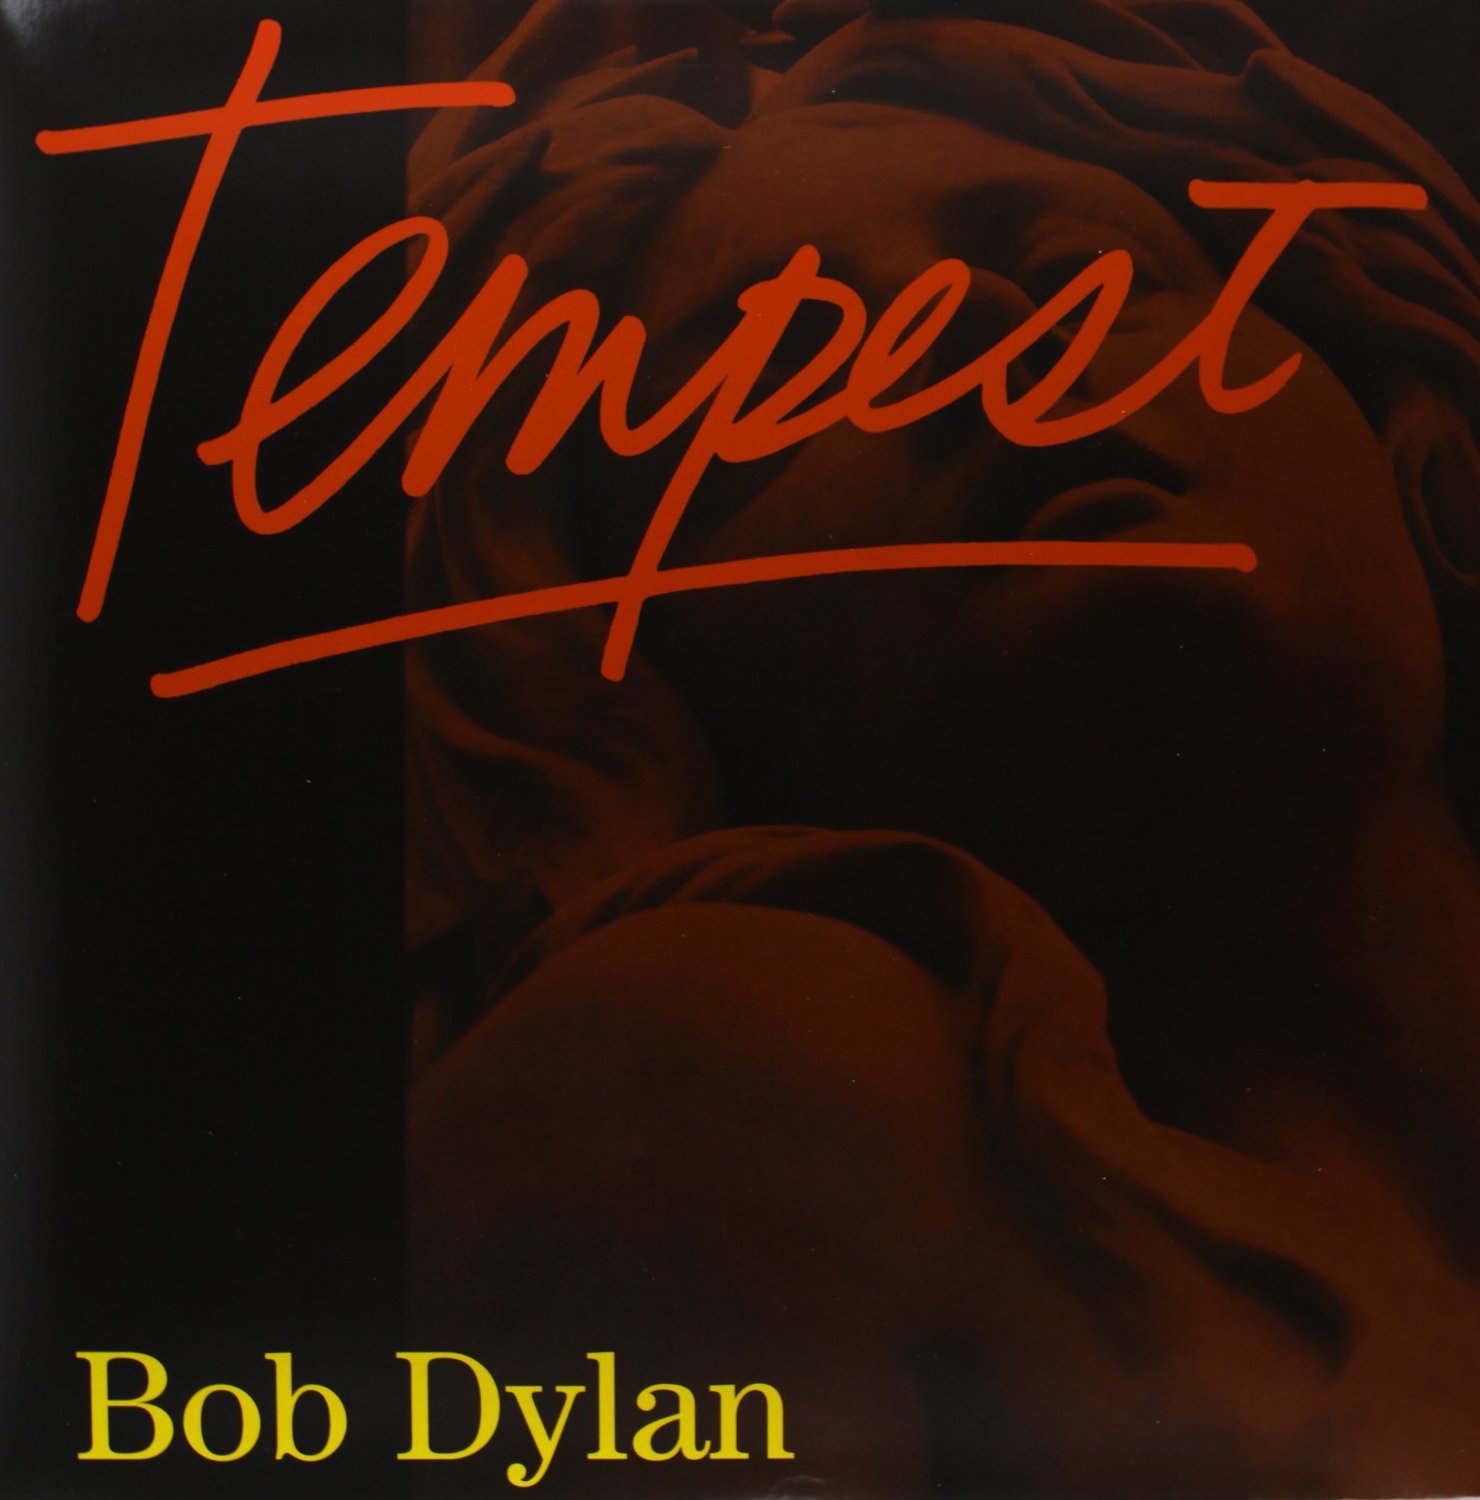 Vinile Bob Dylan - Tempest (2 Lp+Cd) NUOVO SIGILLATO, EDIZIONE DEL 07/09/2012 SUBITO DISPONIBILE